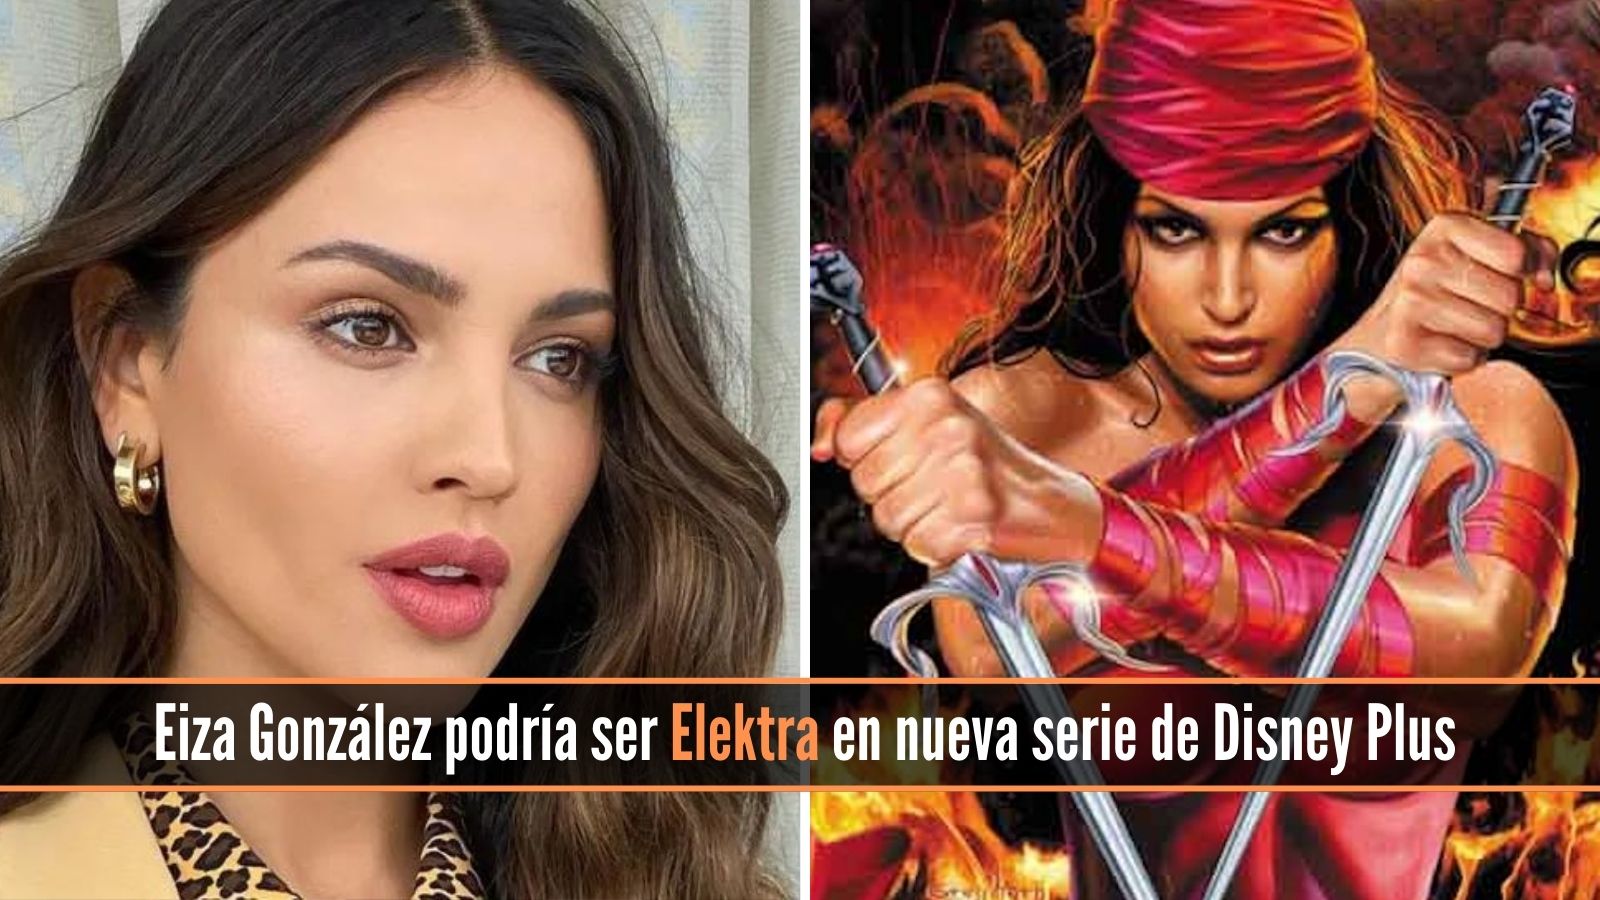 Eiza González podría ser Elektra en nueva serie de Disney Plus